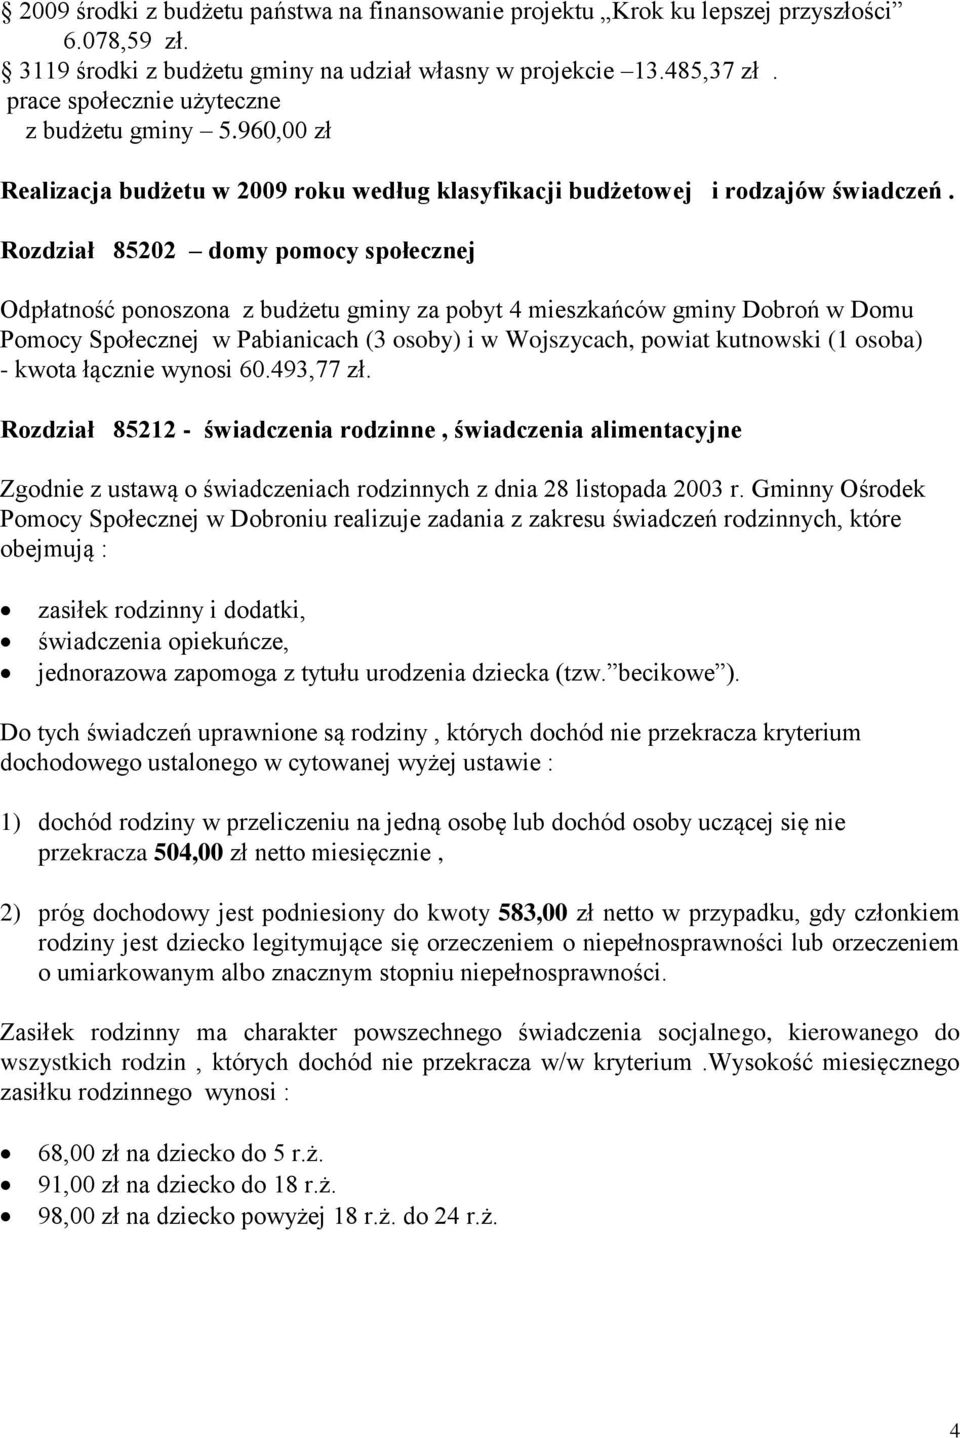 Rozdział 85202 domy pomocy społecznej Odpłatność ponoszona z budżetu gminy za pobyt 4 mieszkańców gminy Dobroń w Domu Pomocy Społecznej w Pabianicach (3 osoby) i w Wojszycach, powiat kutnowski (1